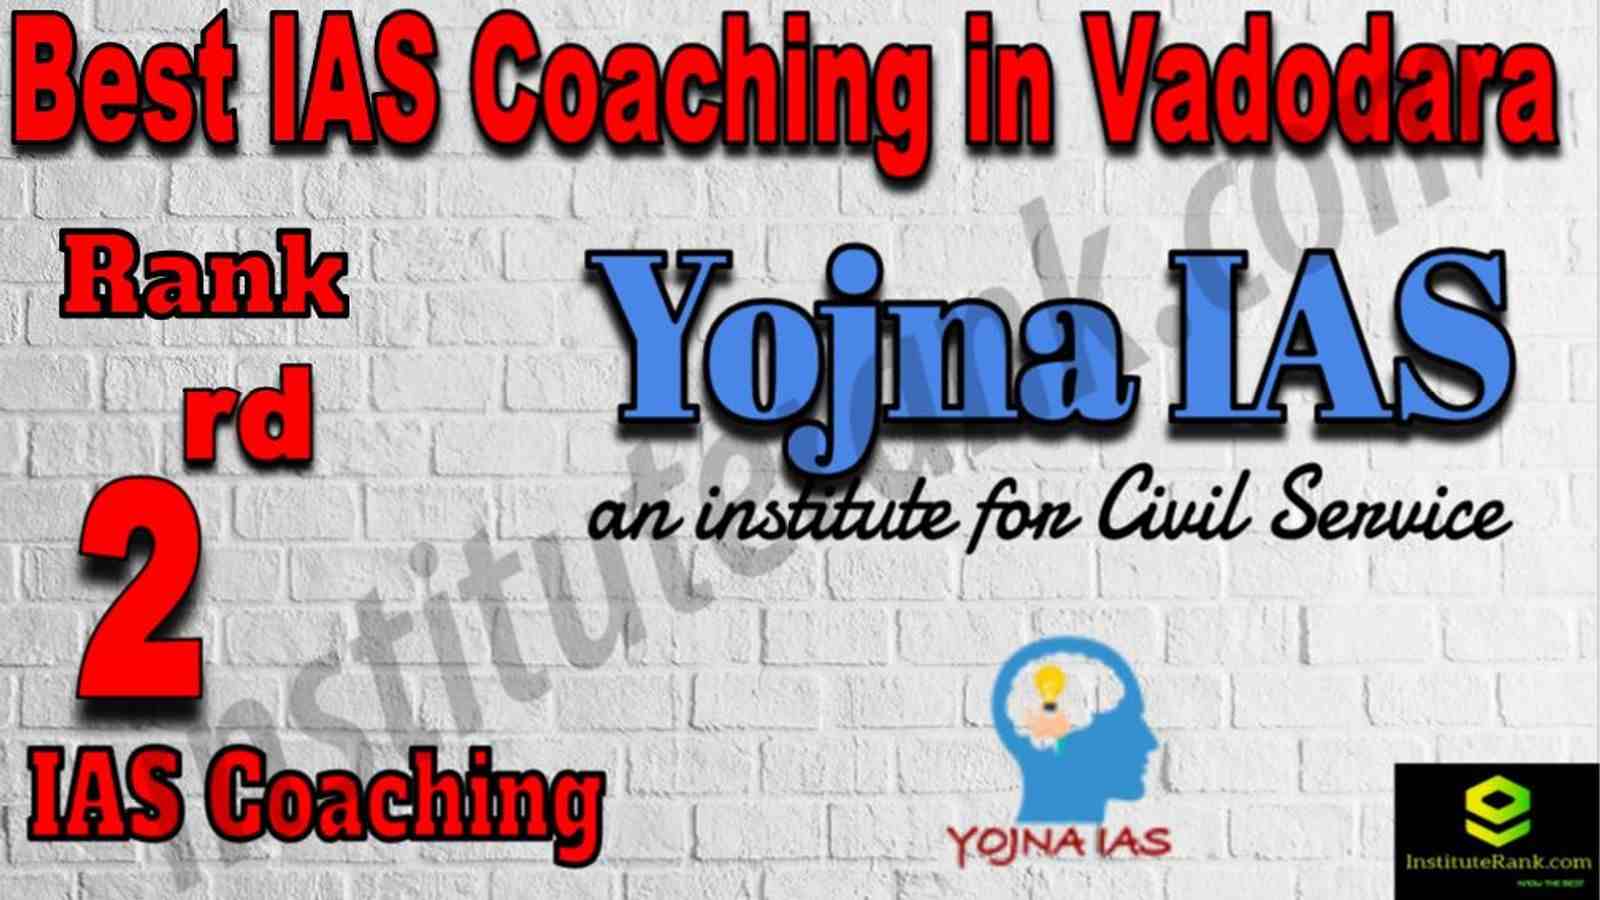 2nd Best IAS Coaching in Vadodara